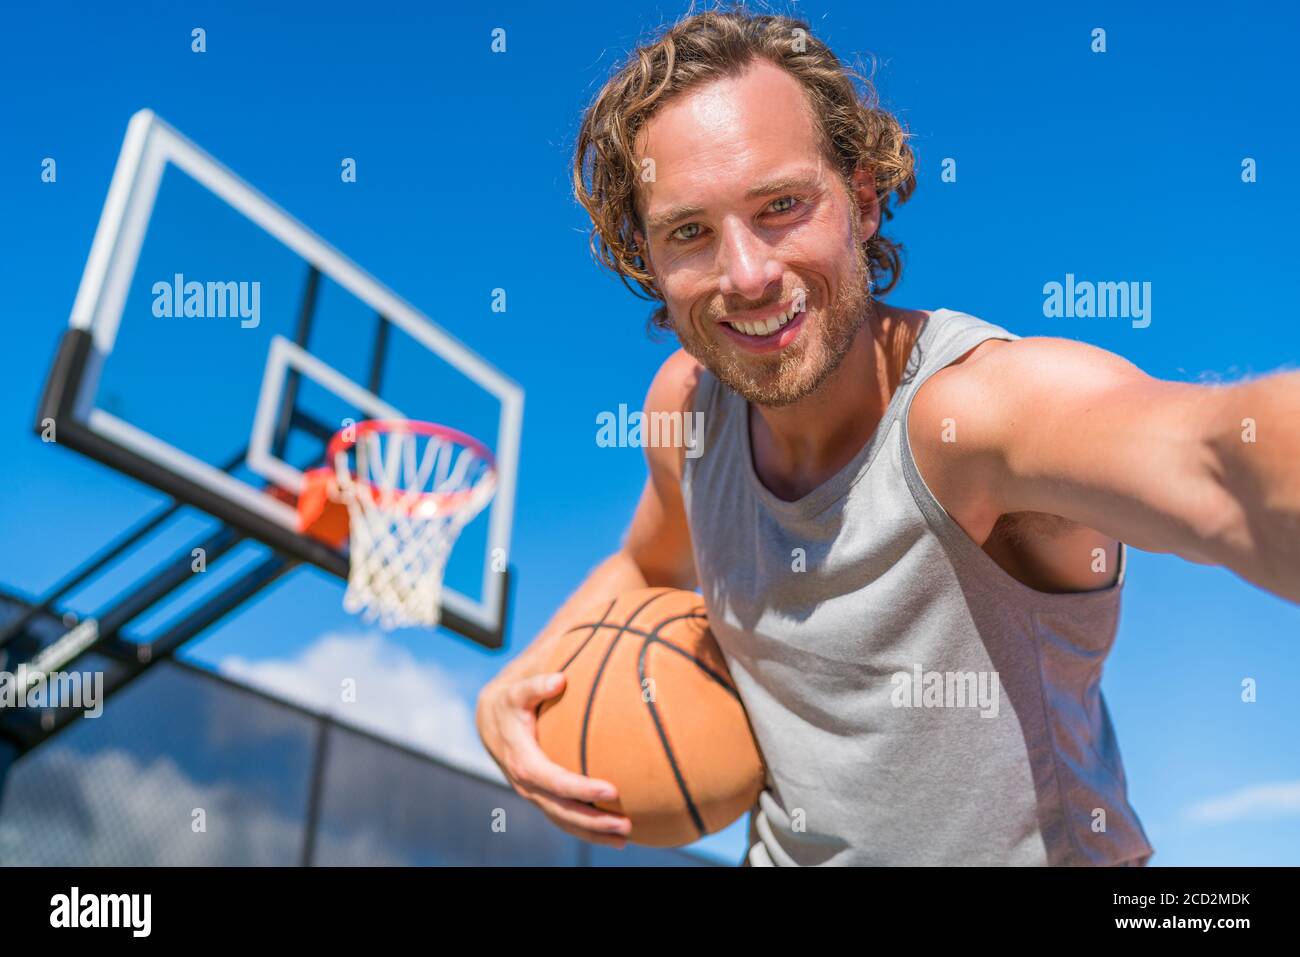 Basketball-Spieler Mann macht Spaß Selfie Foto am Court Netz mit Basketball. Stockfoto